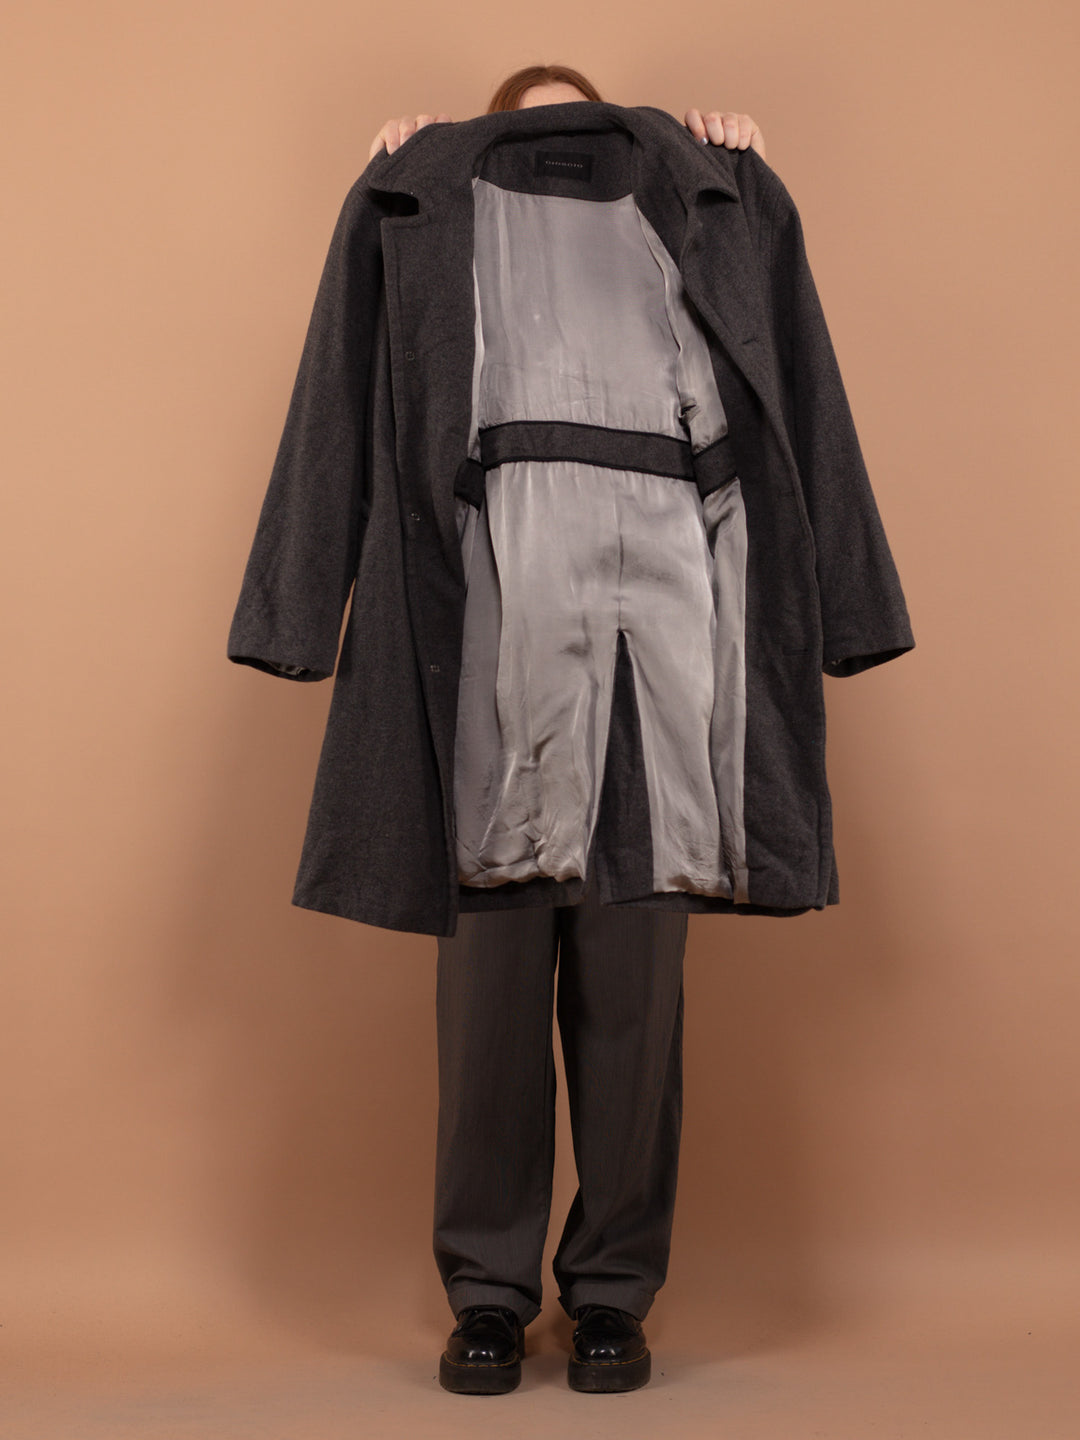 Gray Wool Coat 00's, Size L Vintage Wool Coat, Gray Wool Coat, Oversized Wool Coat, Spring Wool Topcoat,  Office Coat, Minimalist Outerwear